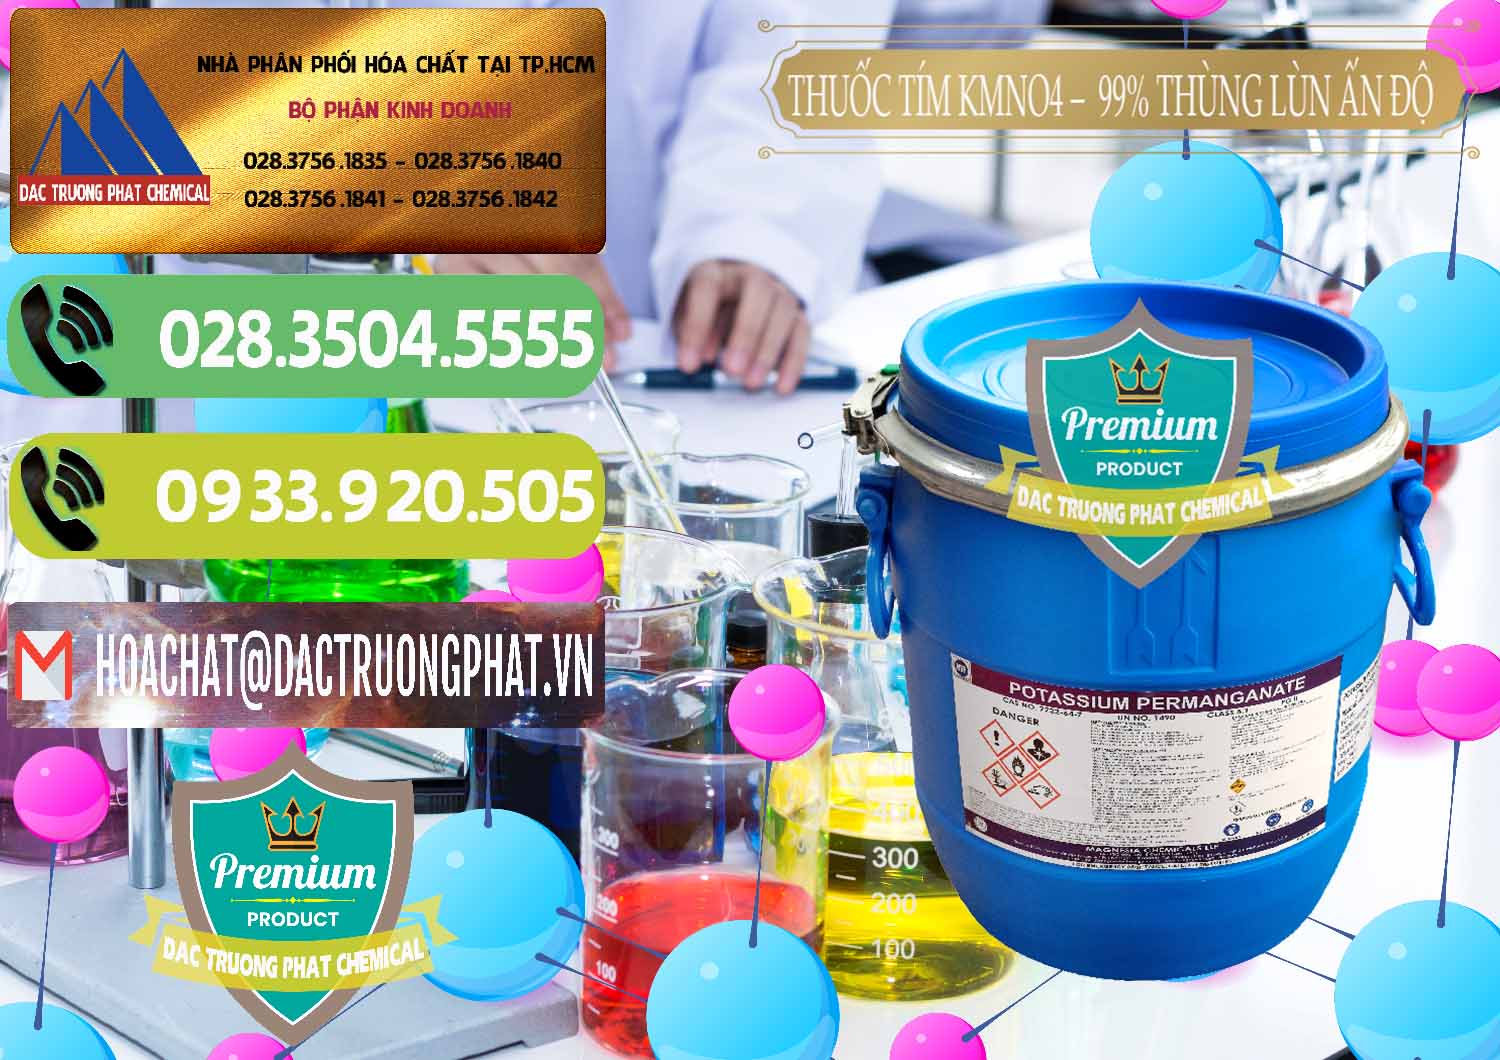 Công ty nhập khẩu ( bán ) Thuốc Tím - KMNO4 Thùng Lùn 99% Magnesia Chemicals Ấn Độ India - 0165 - Chuyên cung cấp và kinh doanh hóa chất tại TP.HCM - hoachatmientay.vn